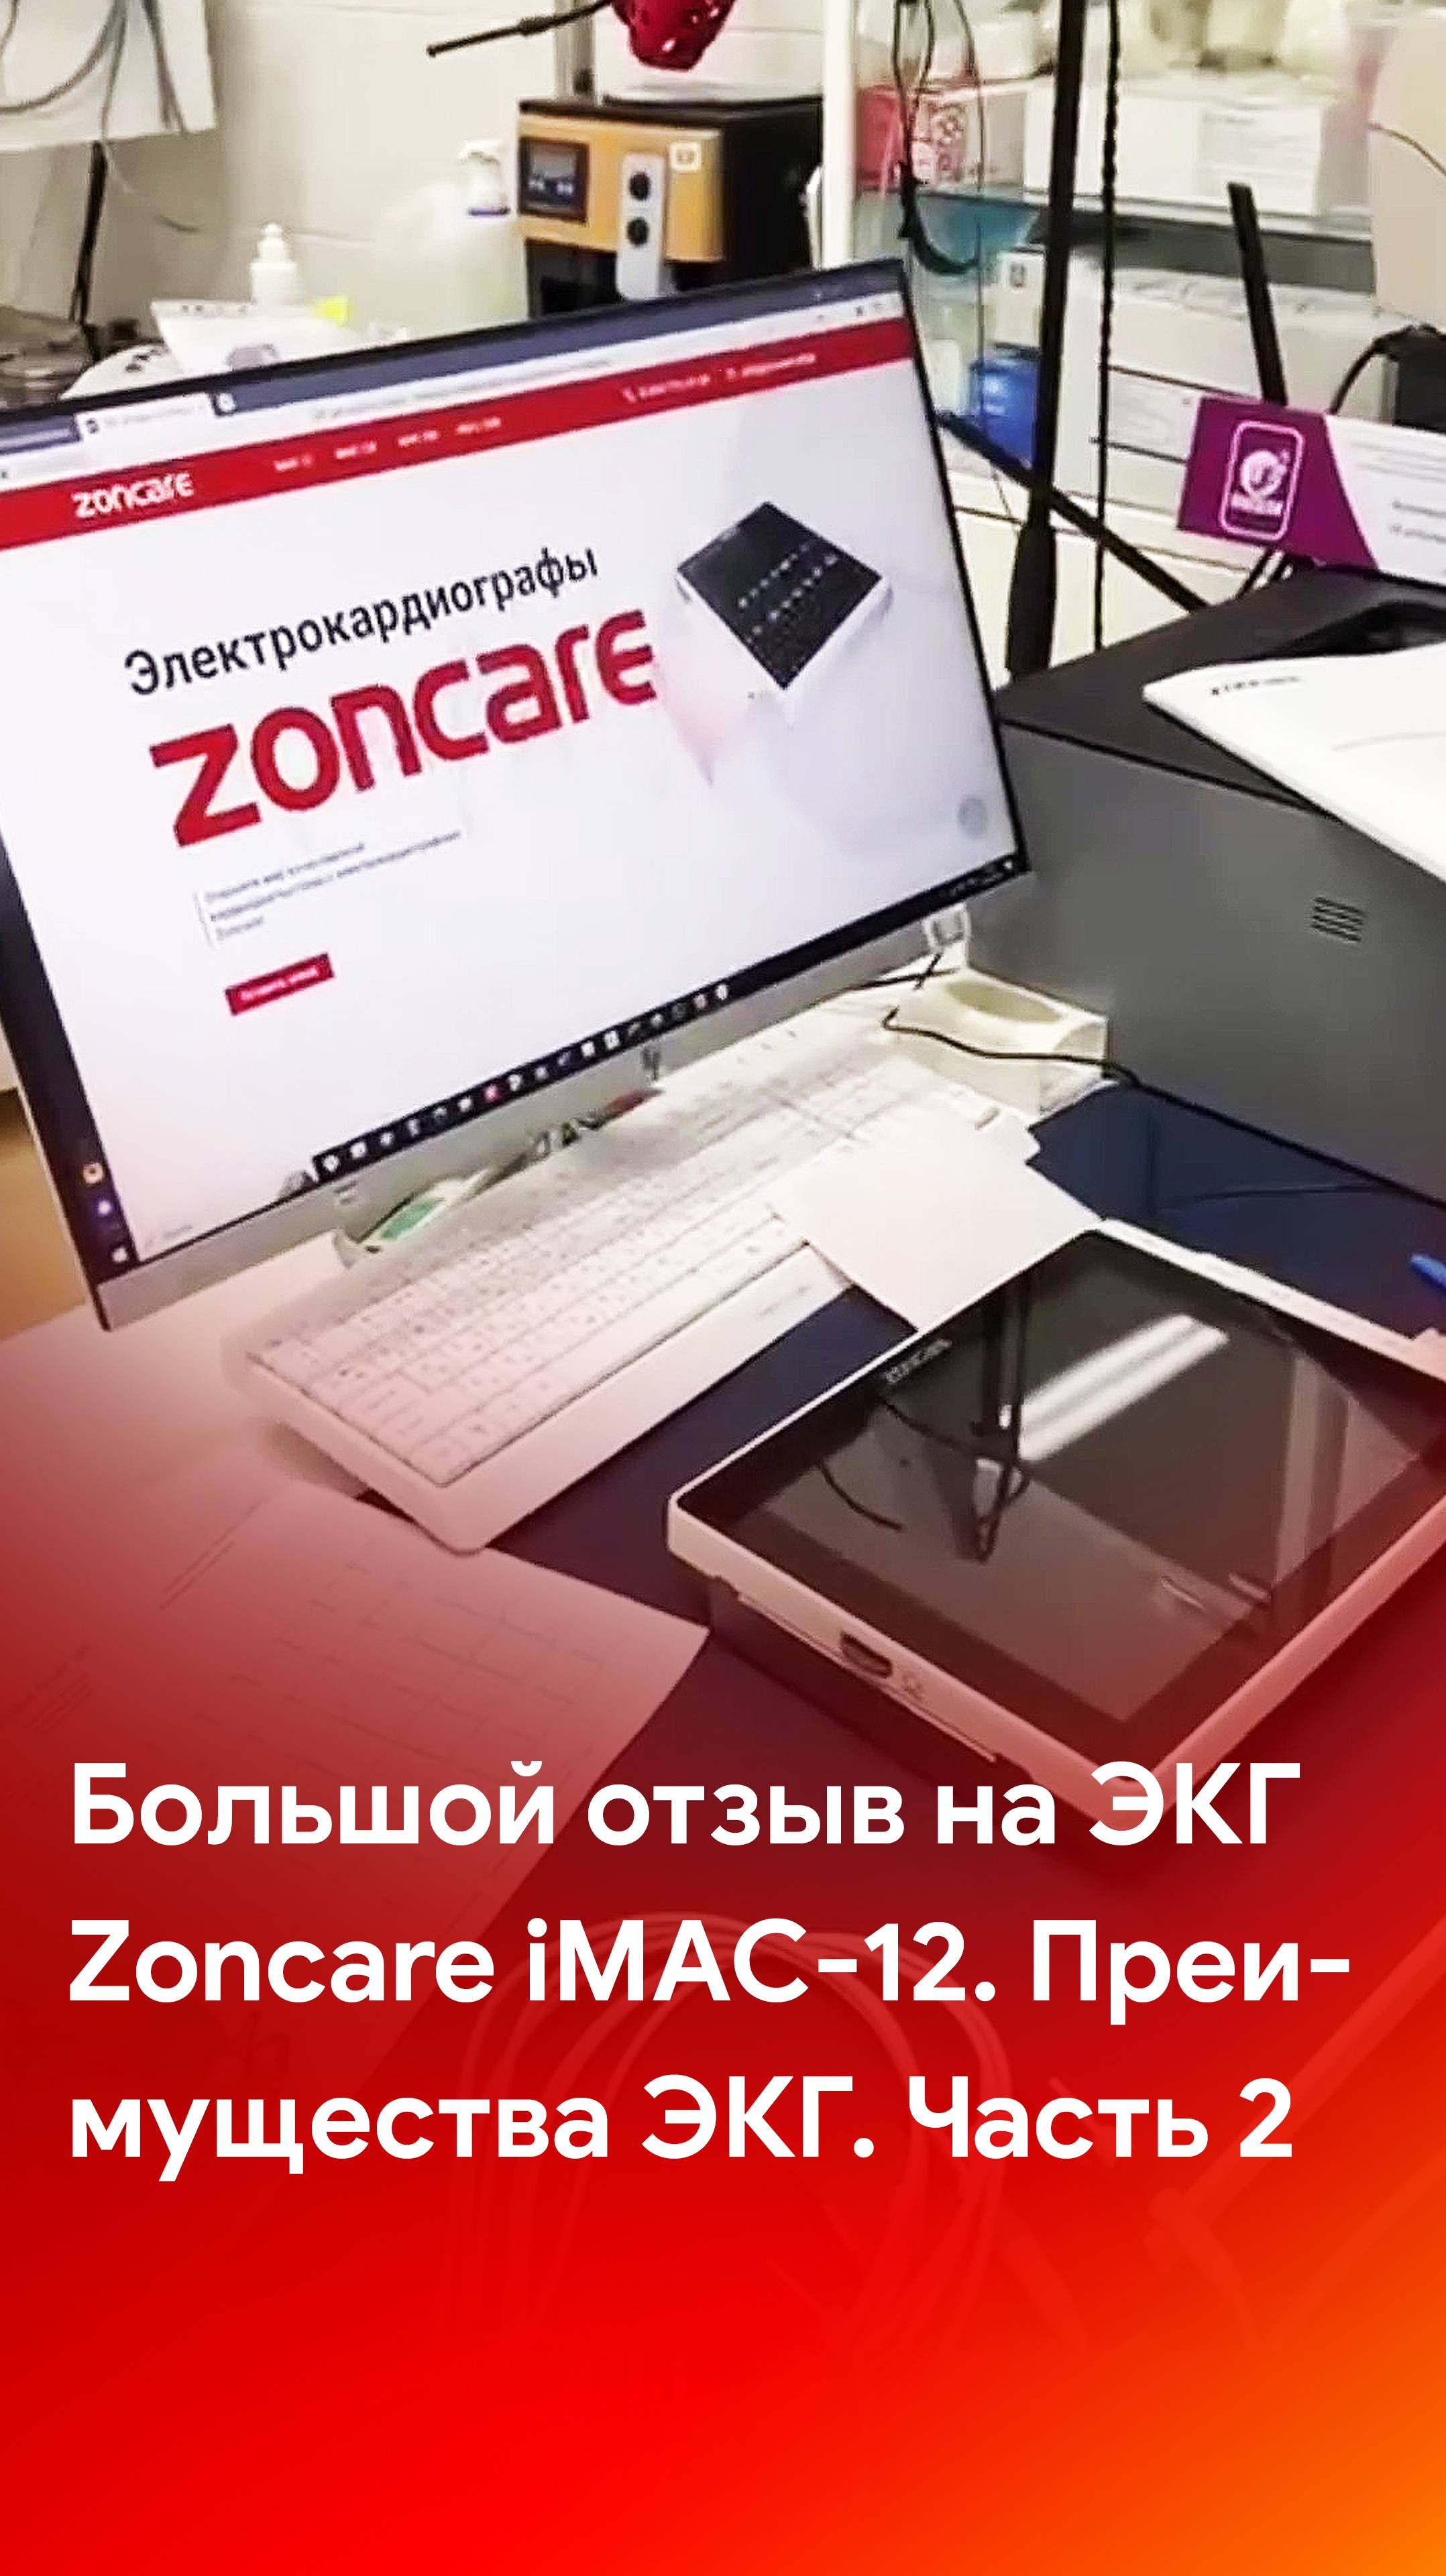 2 часть отзыва на электрокардиограф Zoncare iMAC-12